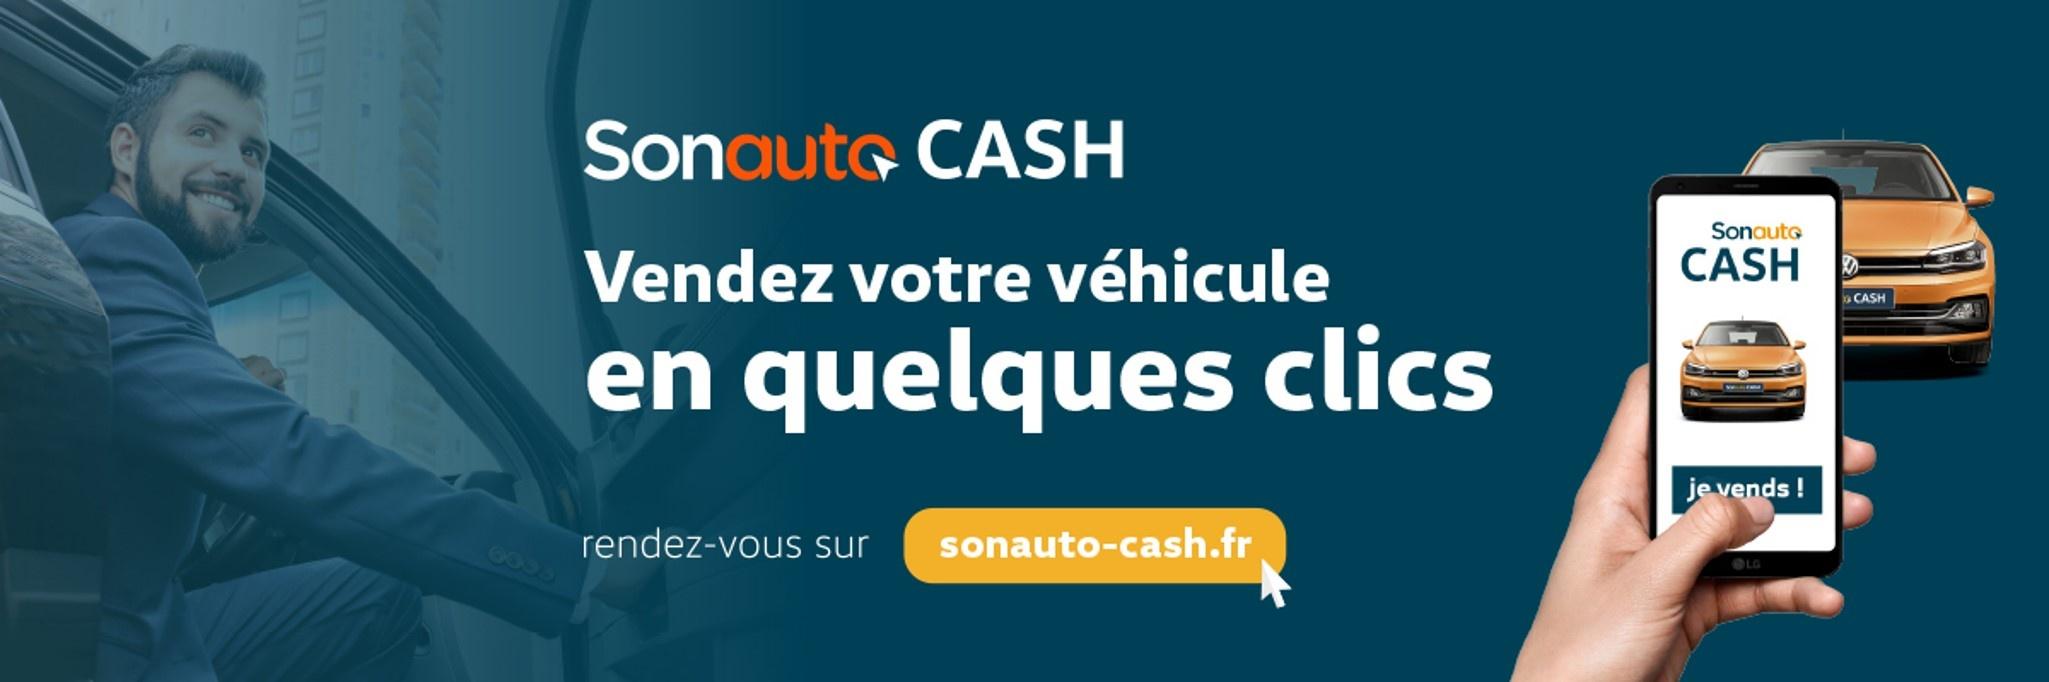 CAR - Volkswagen Utilitaires Nice Est - Vendez votre véhicule en quelques clics avec Sonauto Cash